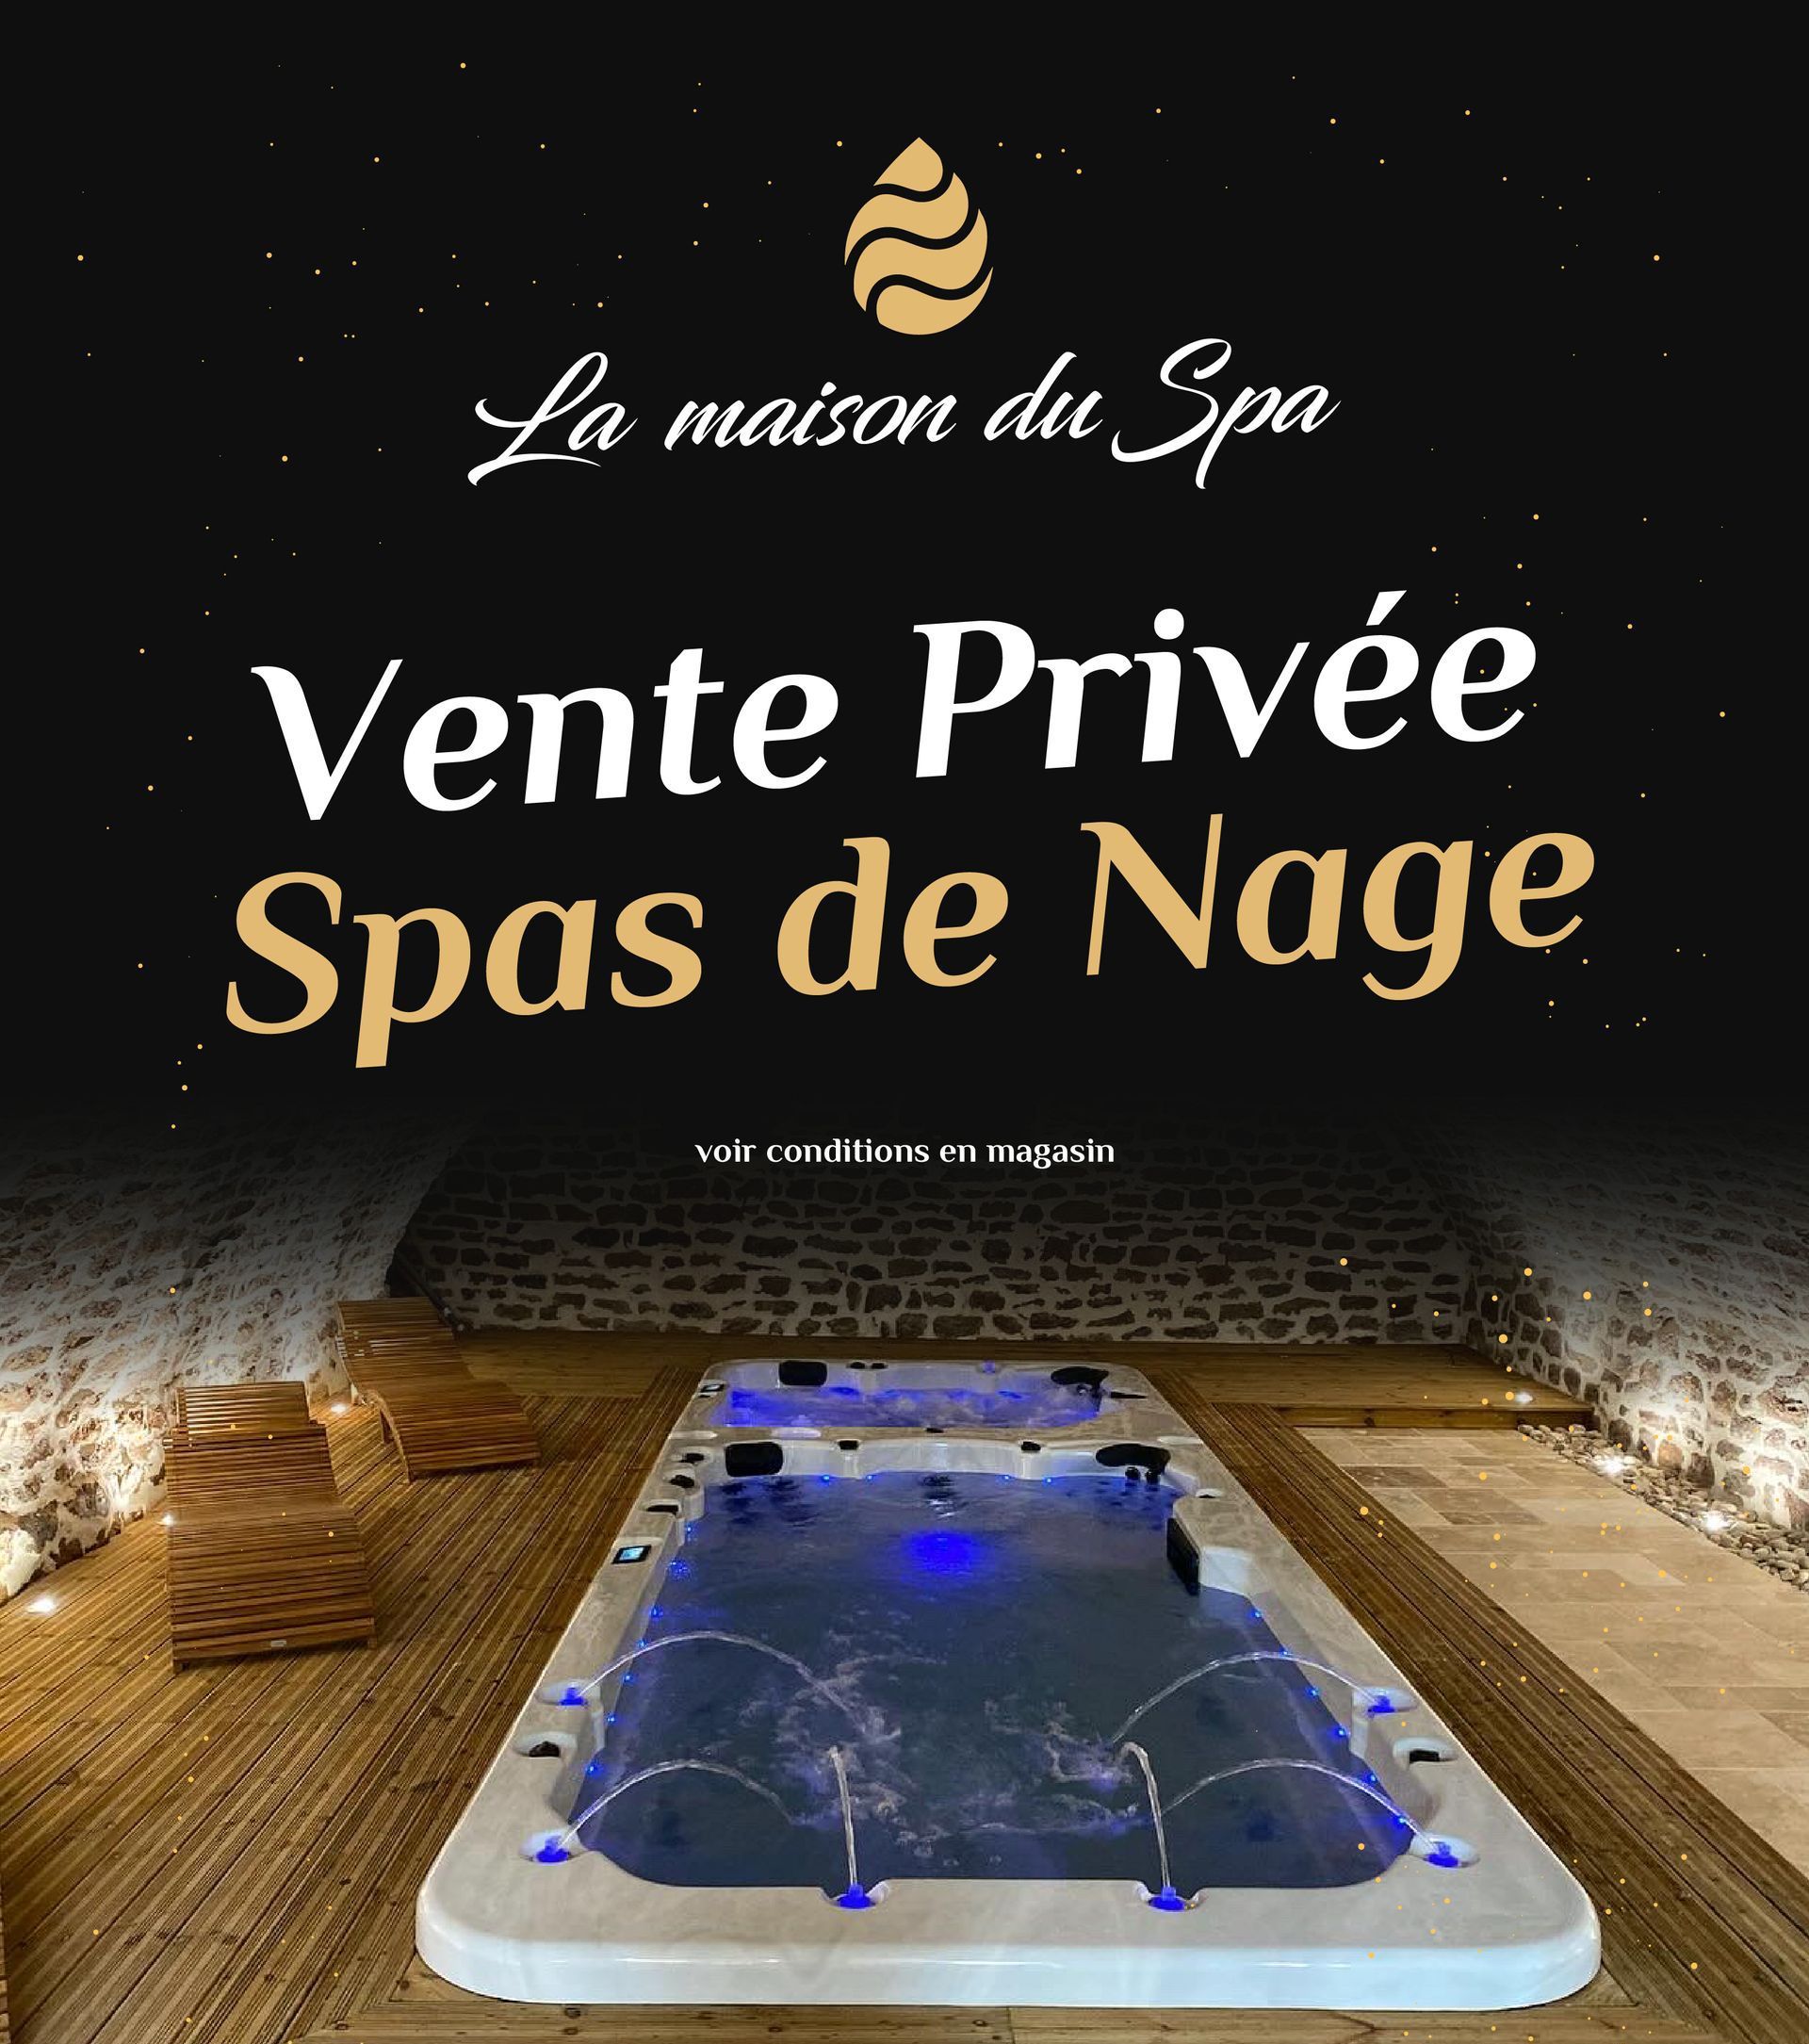 Visuel de la promotion vente privée spa de nage La Maison Du Spa